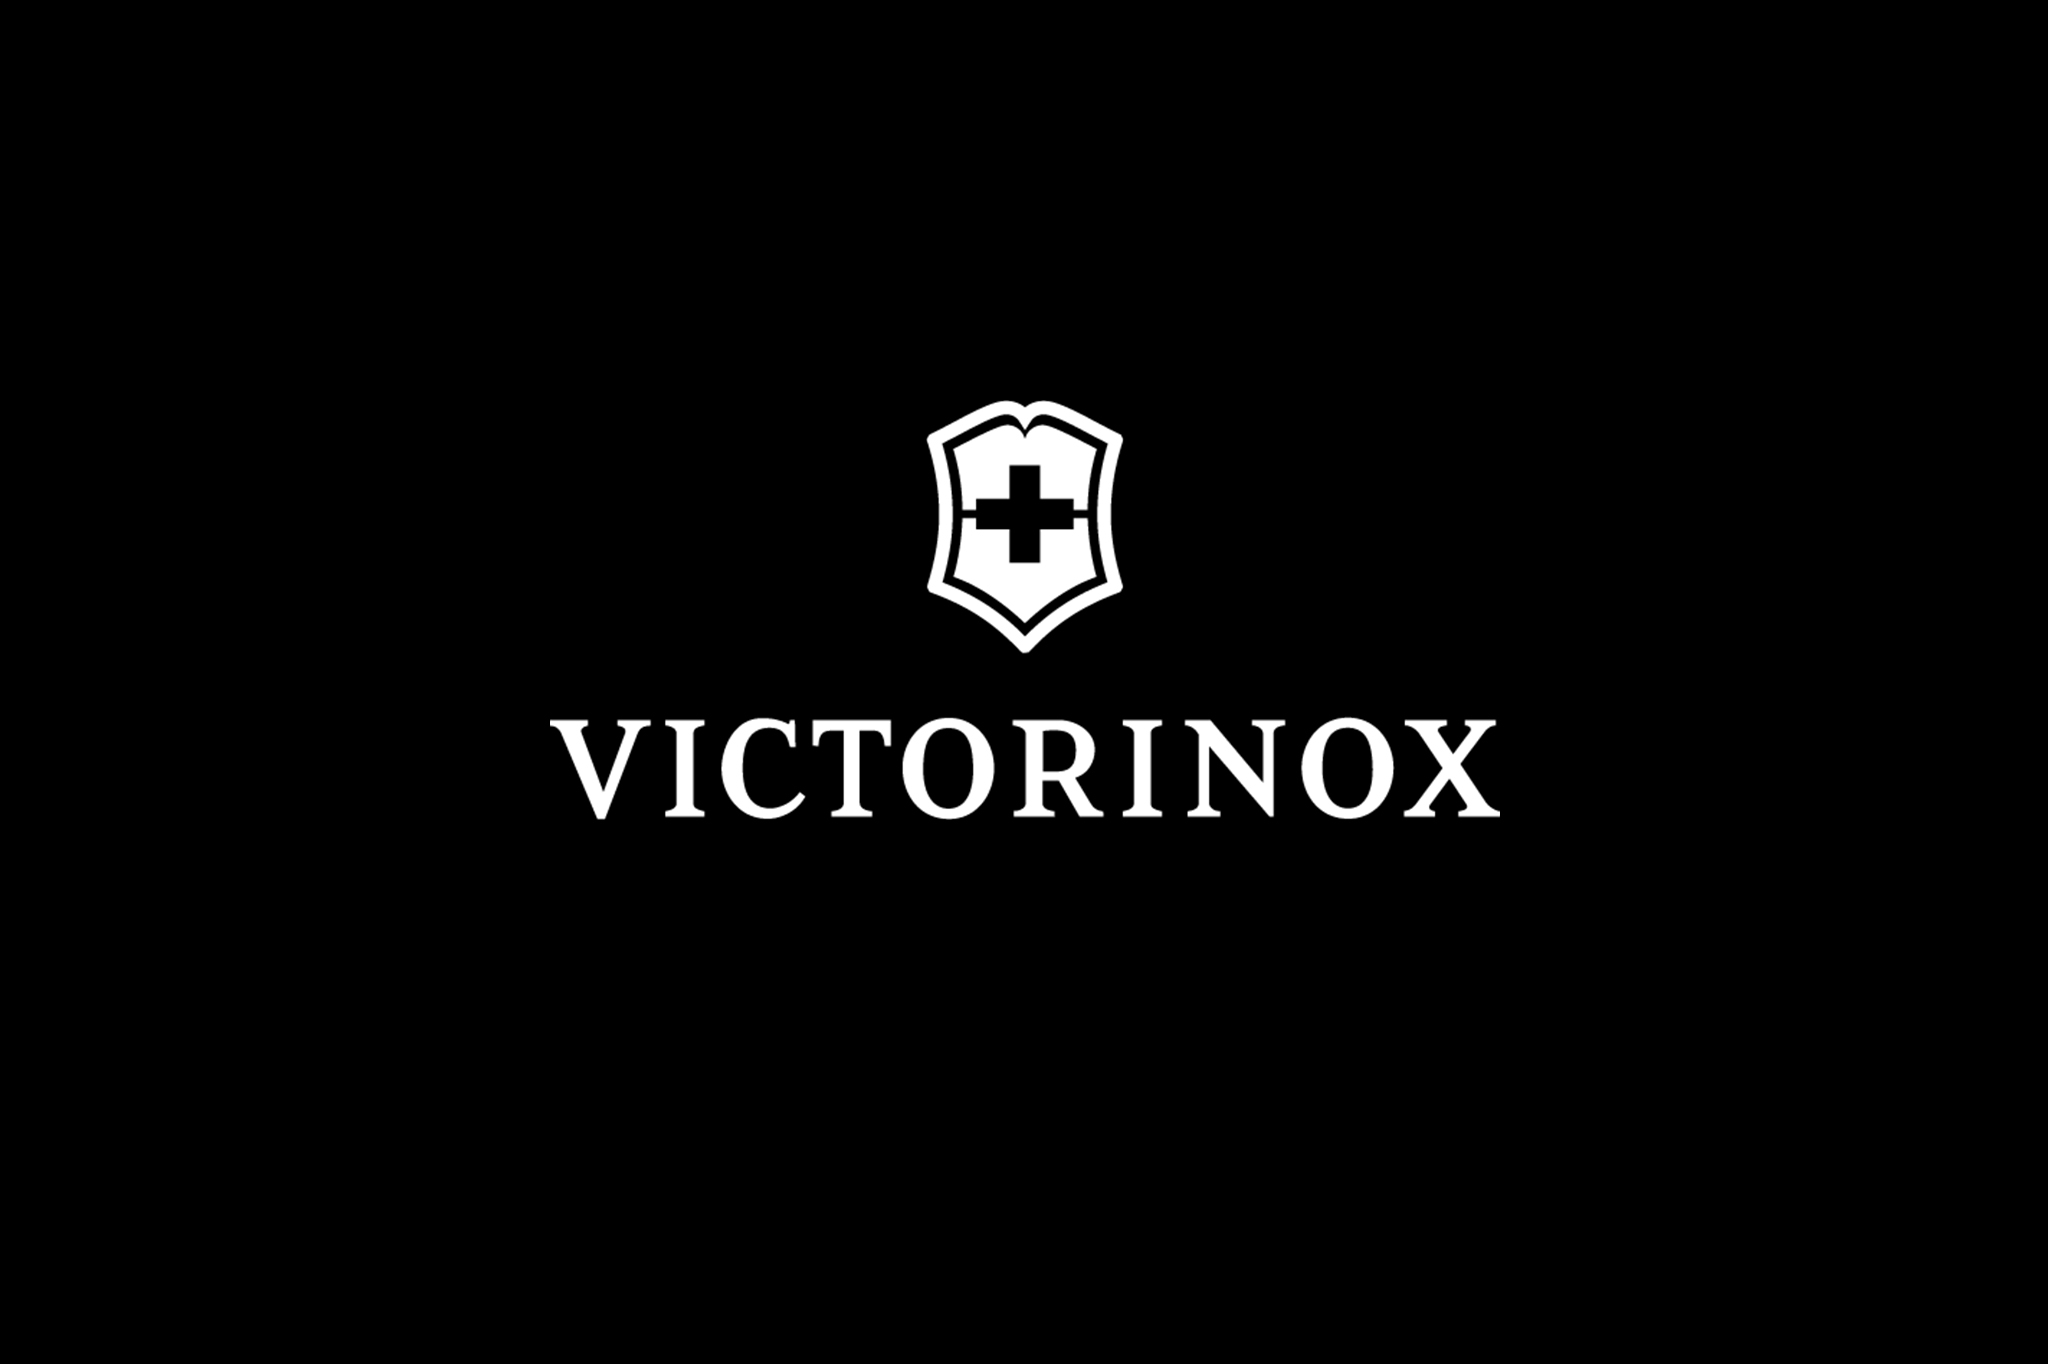 Victorinox Uhren